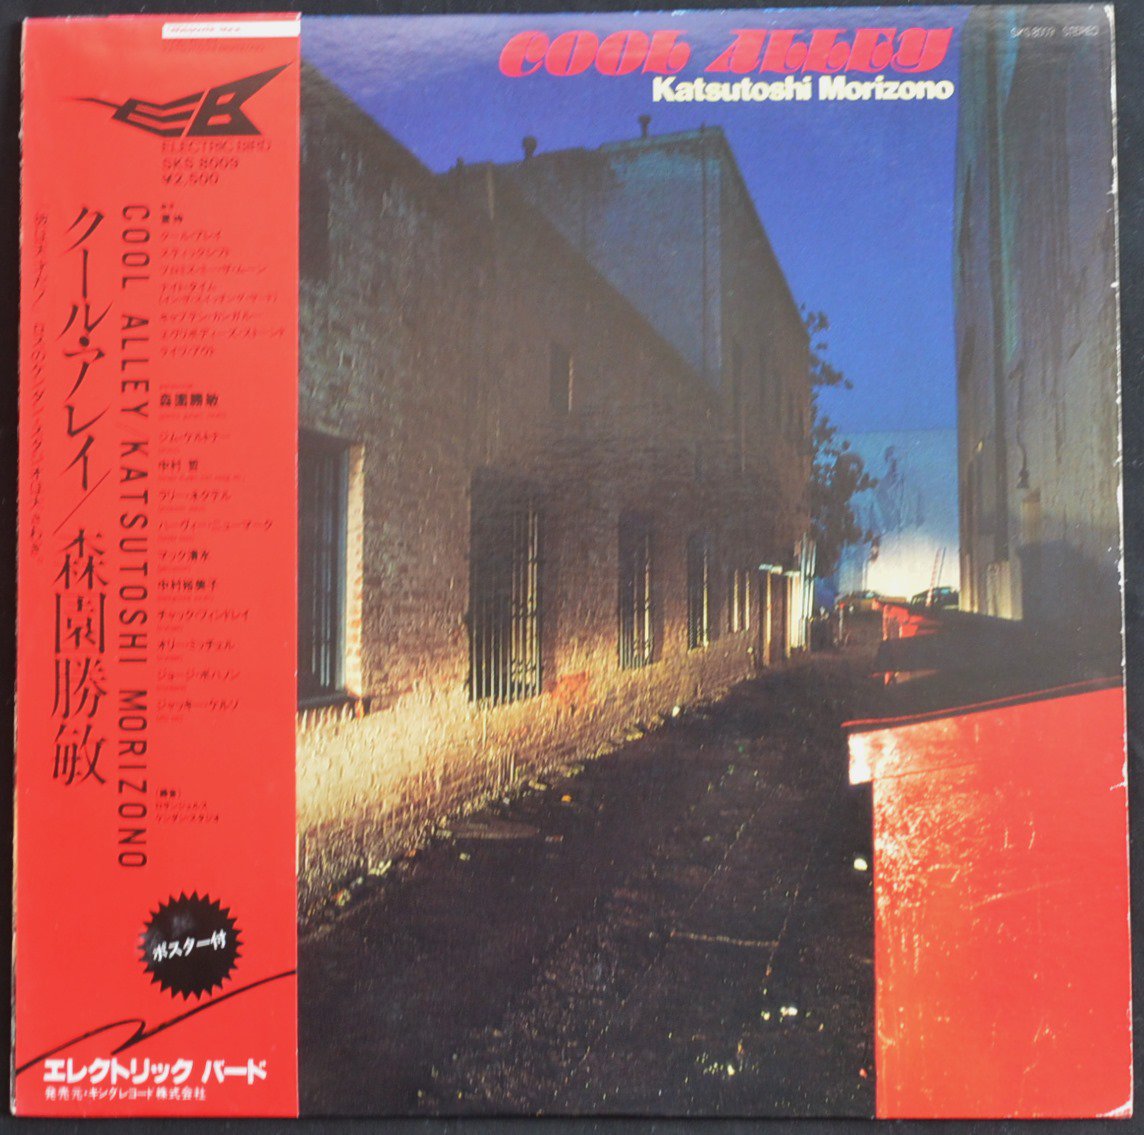 森園勝敏 KATSUTOSHI MORIZONO / クール・アレイ COOL ALLEY (LP)